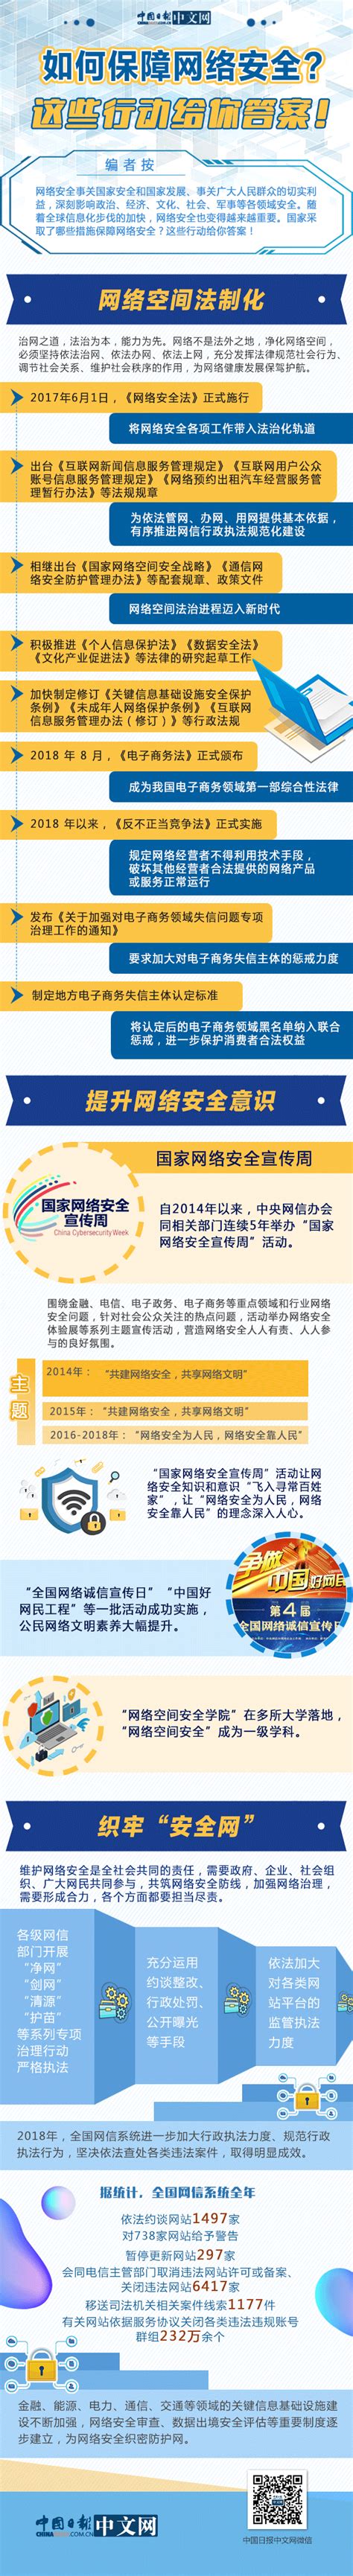 2020年中国十大网络安全事件-图纸文档管理与信息安全管理专家